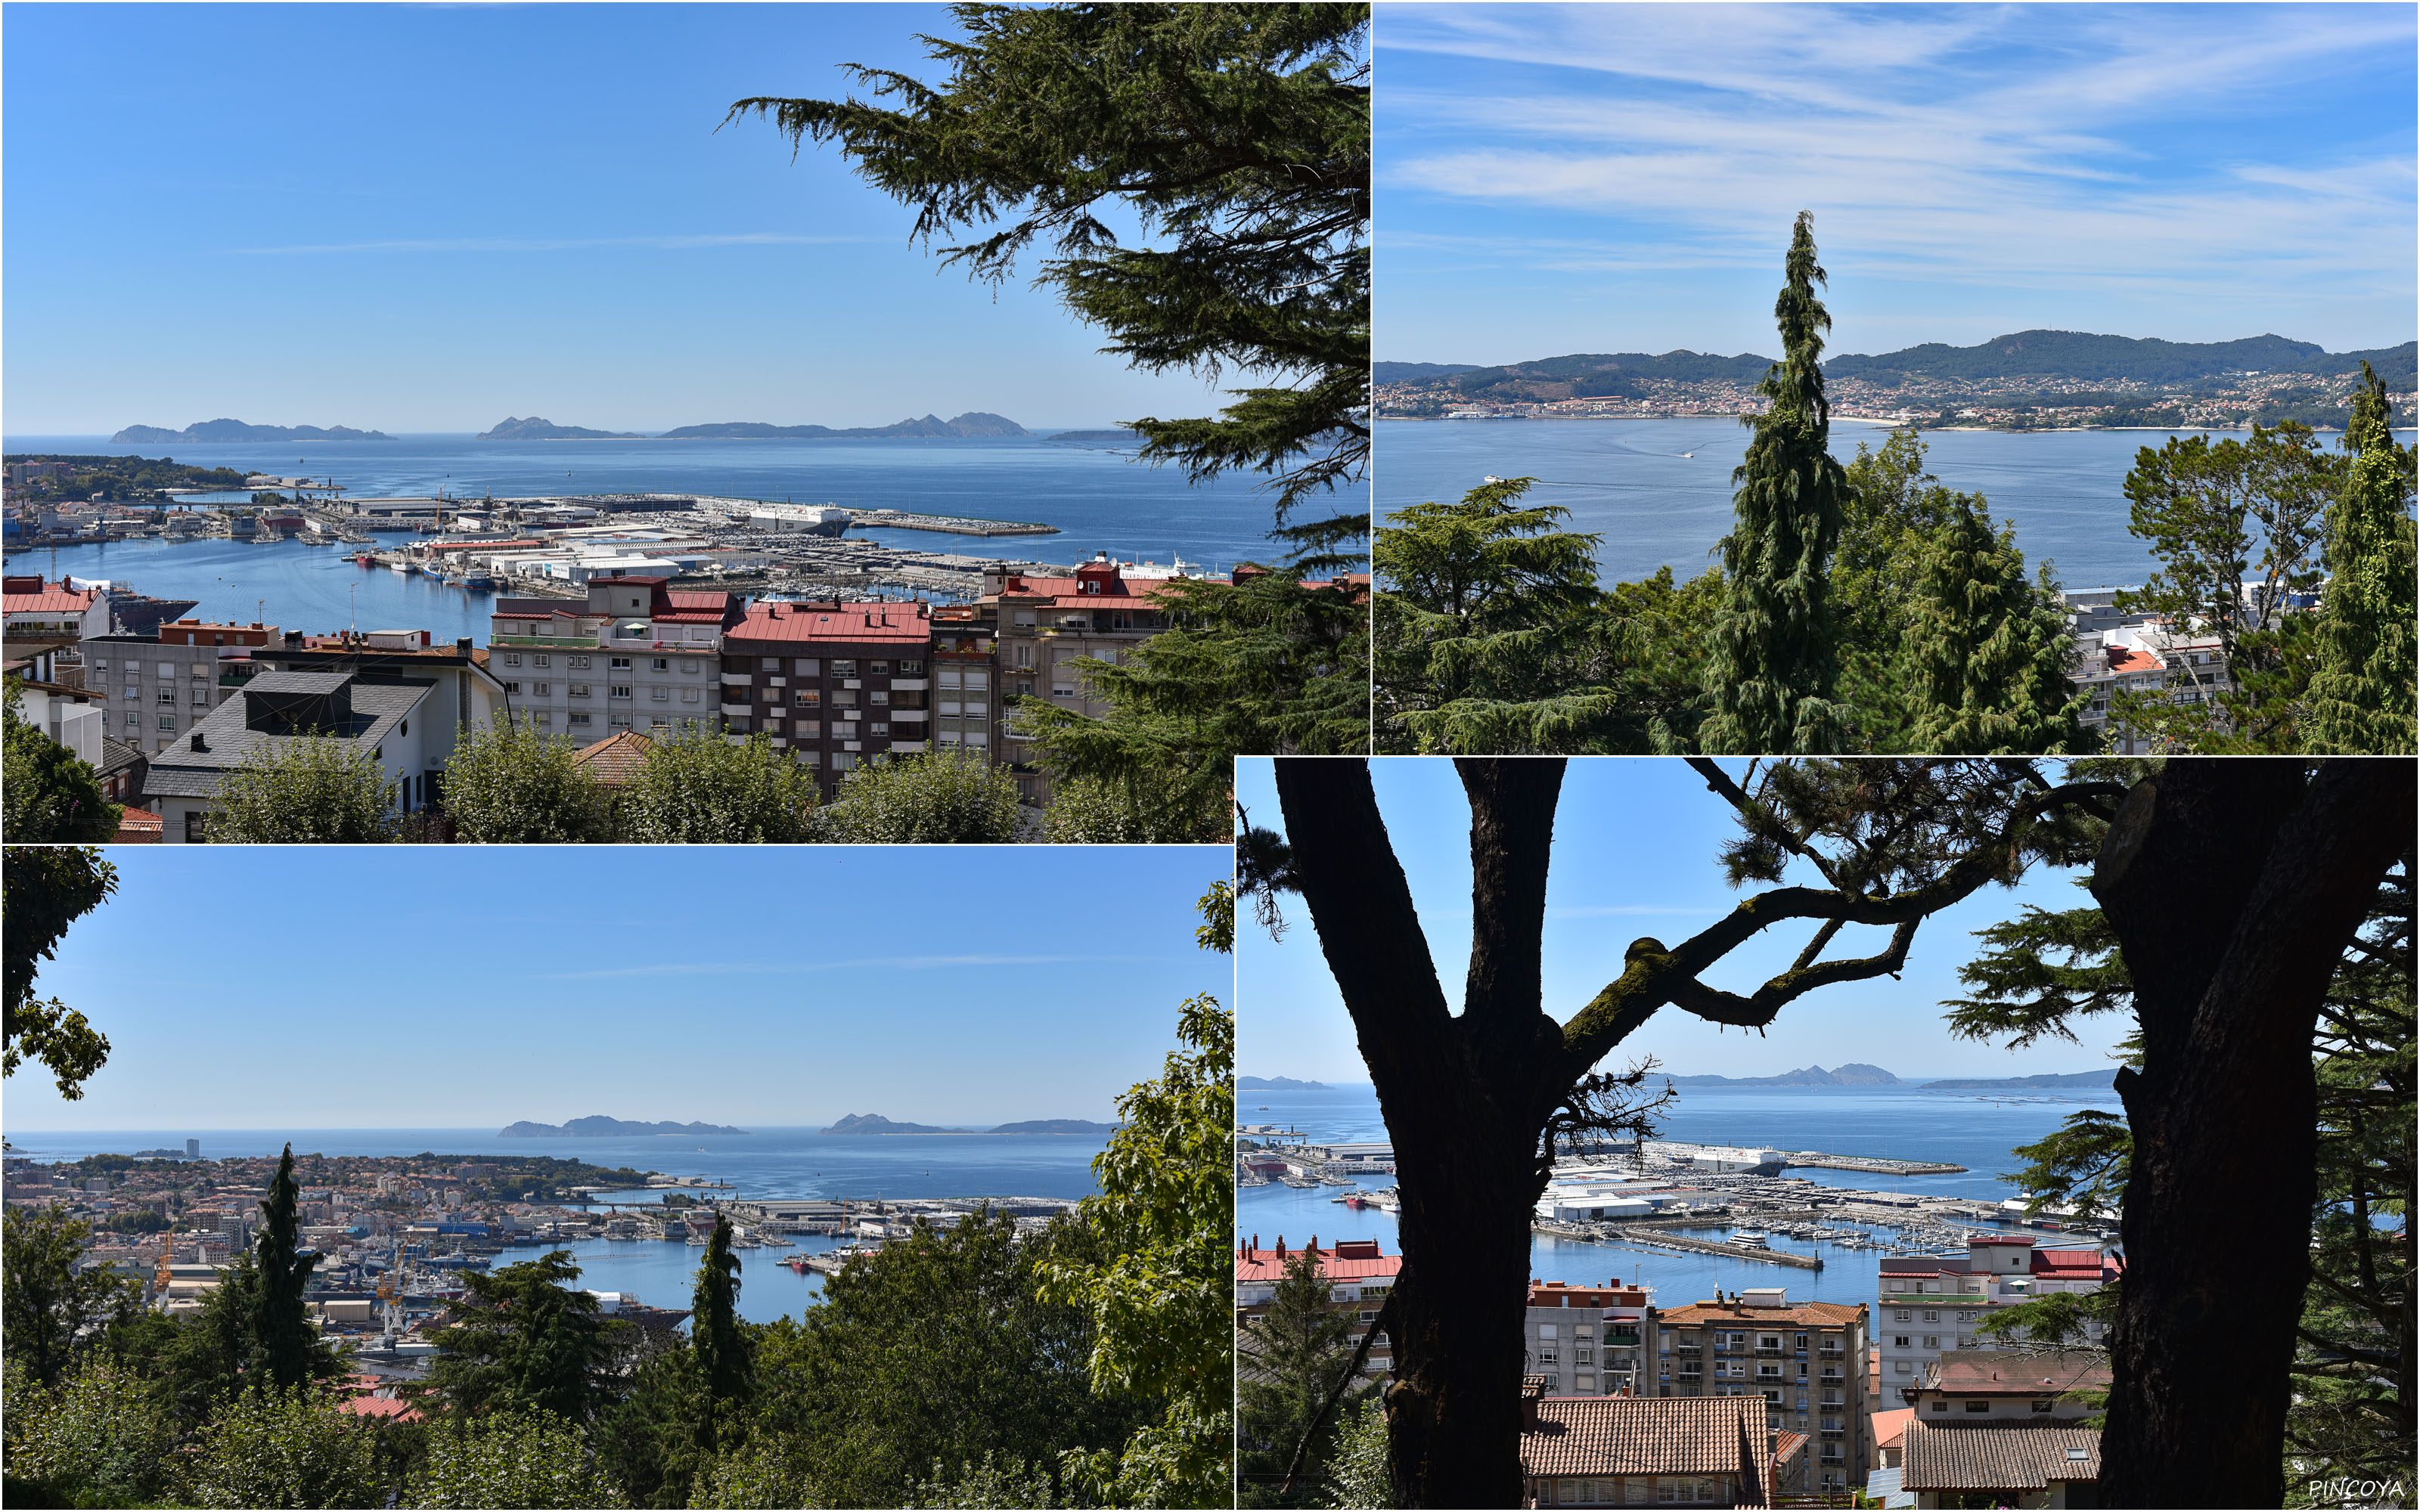 „Ausblick vom Castelo de Vigo. Oben links und unten rechts sieht man die PINOYA. Oder ist sie doch zu klein?“